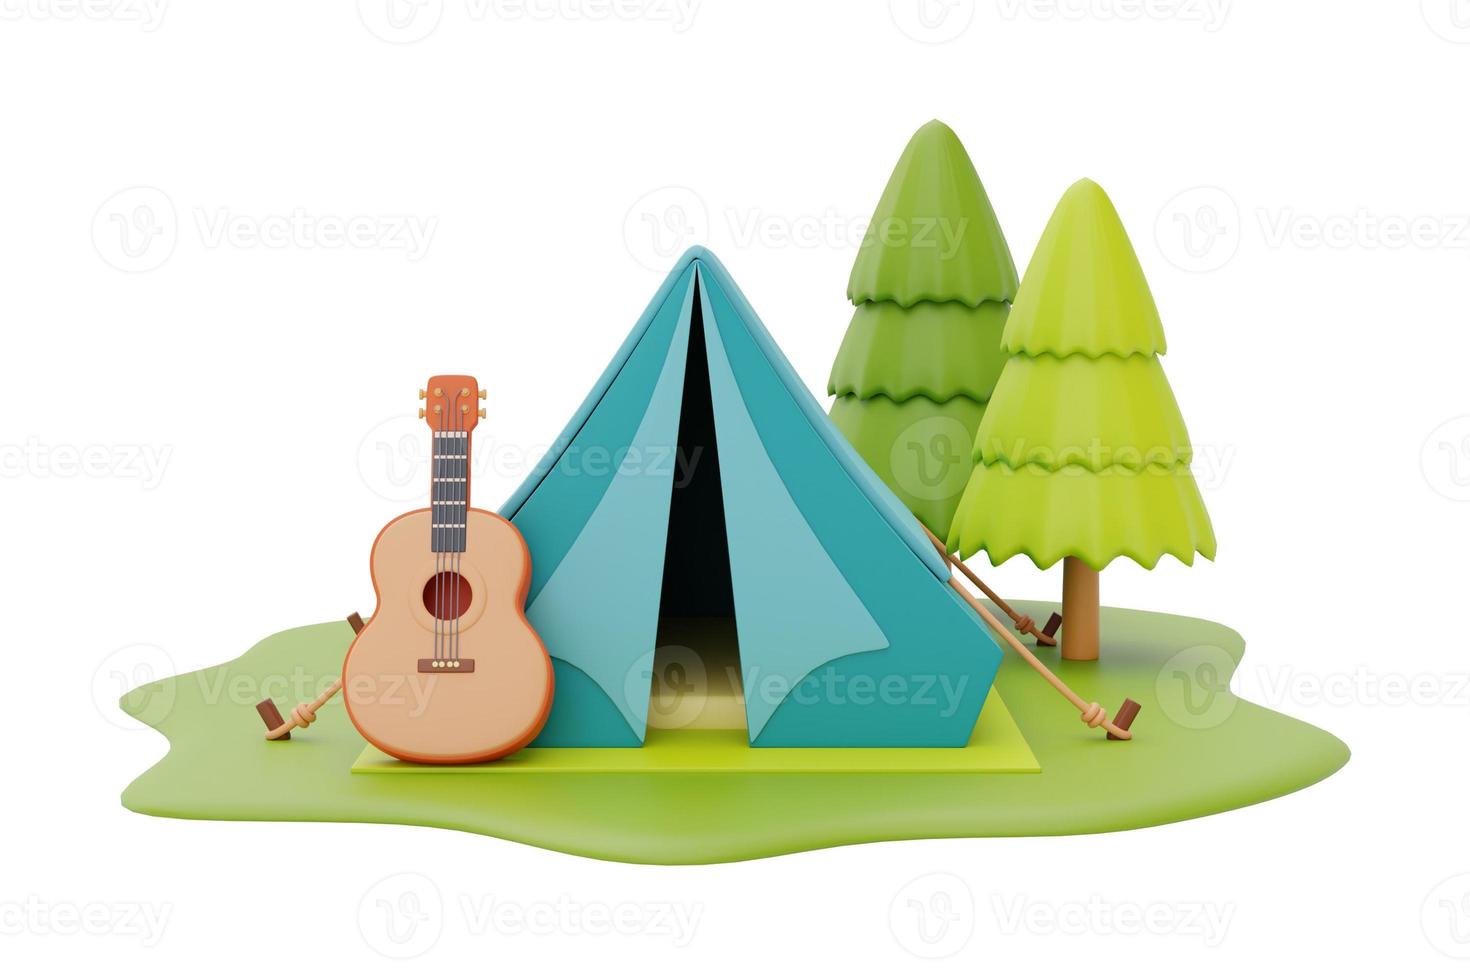 barraca de acampamento turística com guitarra no local de acampamento, conceito de acampamento de verão, renderização em 3d. foto